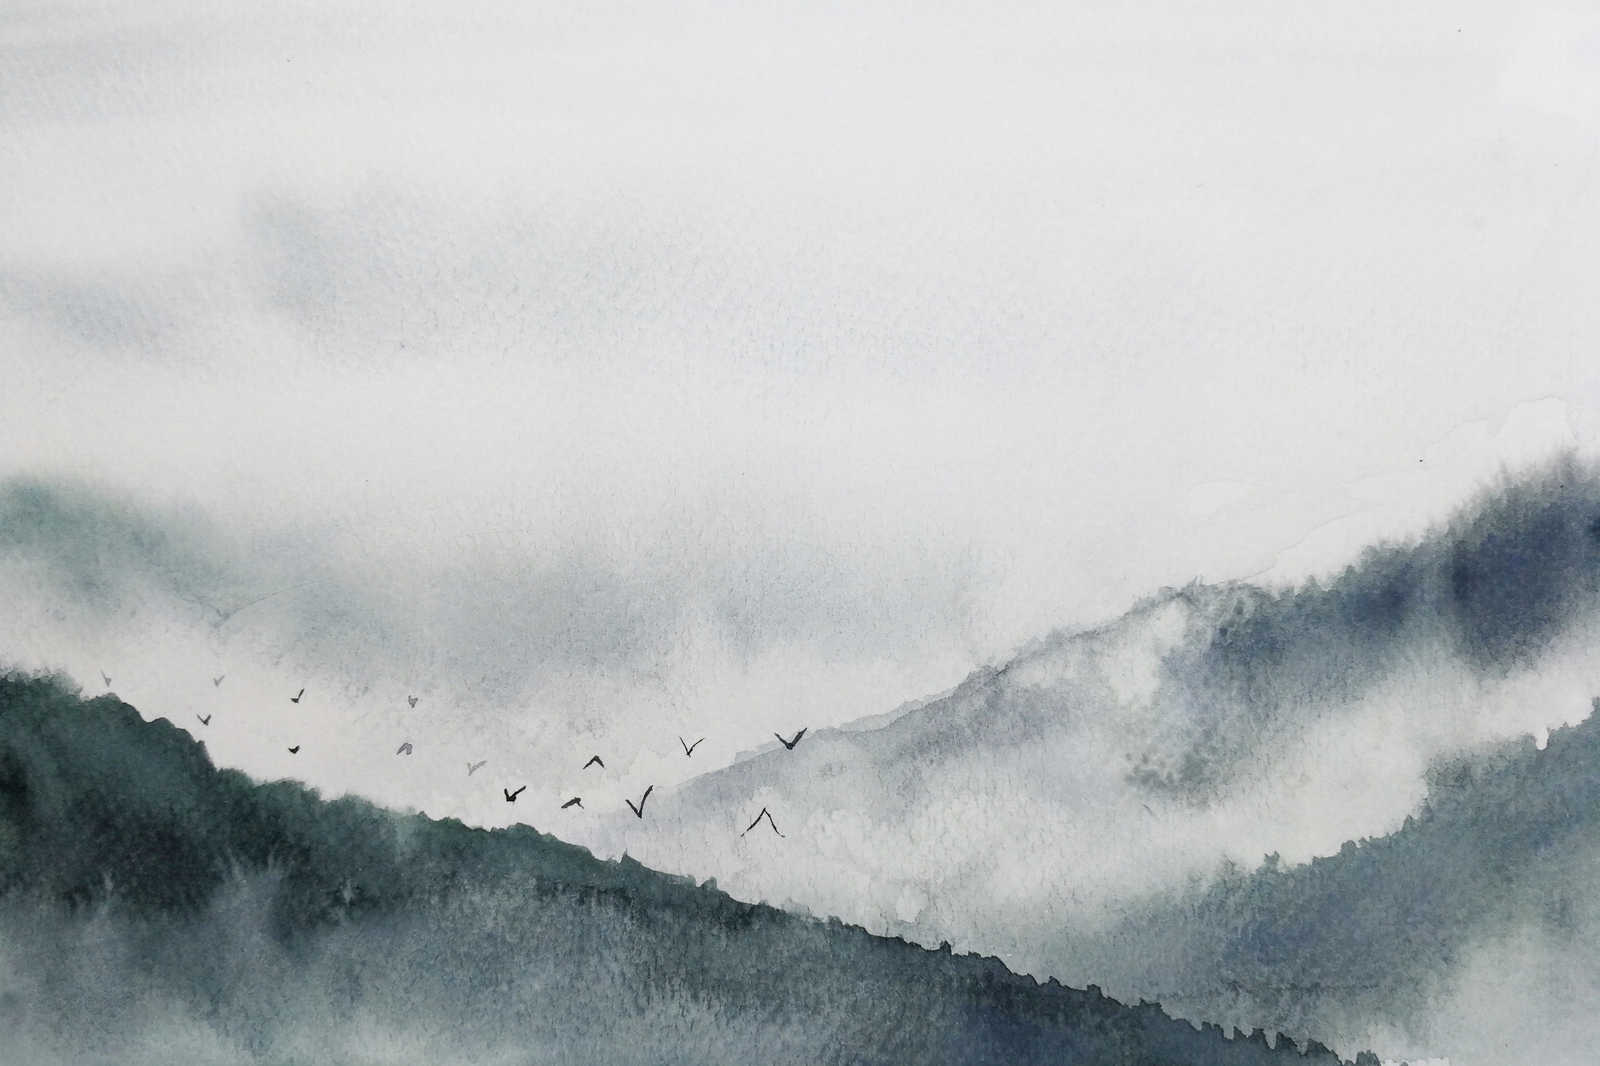             Canvas met mistig landschap in schilderstijl | grijs, zwart - 0.90 m x 0.60 m
        